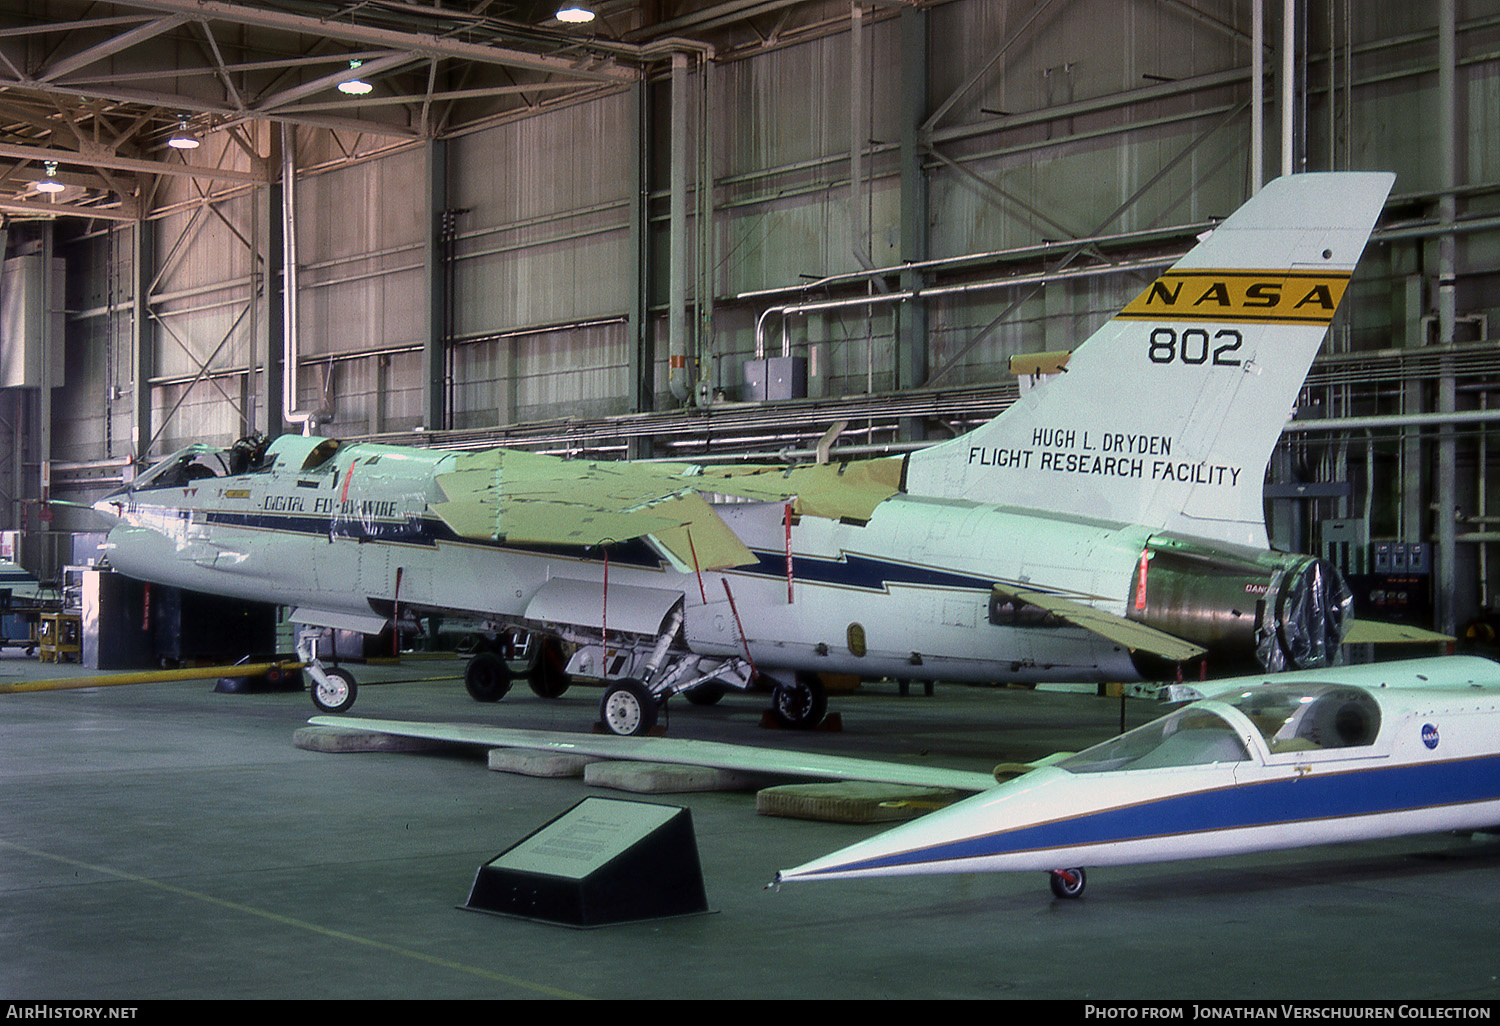 Aircraft Photo of NASA 802 | Vought F-8C Crusader | NASA - National Aeronautics and Space Administration | AirHistory.net #300260